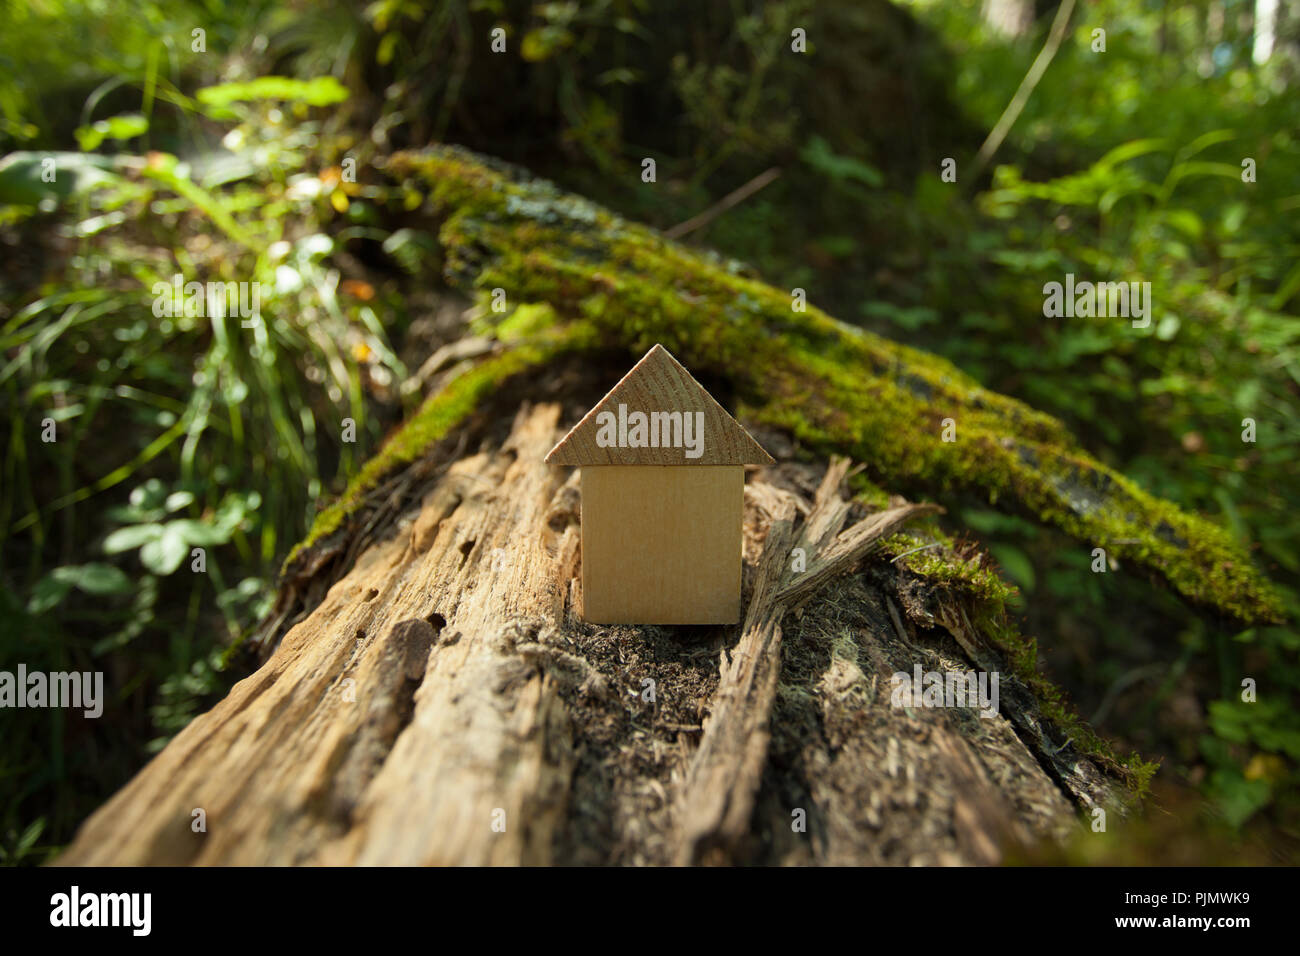 Umweltfreundliche Haus Konzept, Umweltschutz Konzept, Grüne Feder Hintergrund, Modell Home im Freien in einem Garten mit Kopie Raum auf Holz zurück Stockfoto